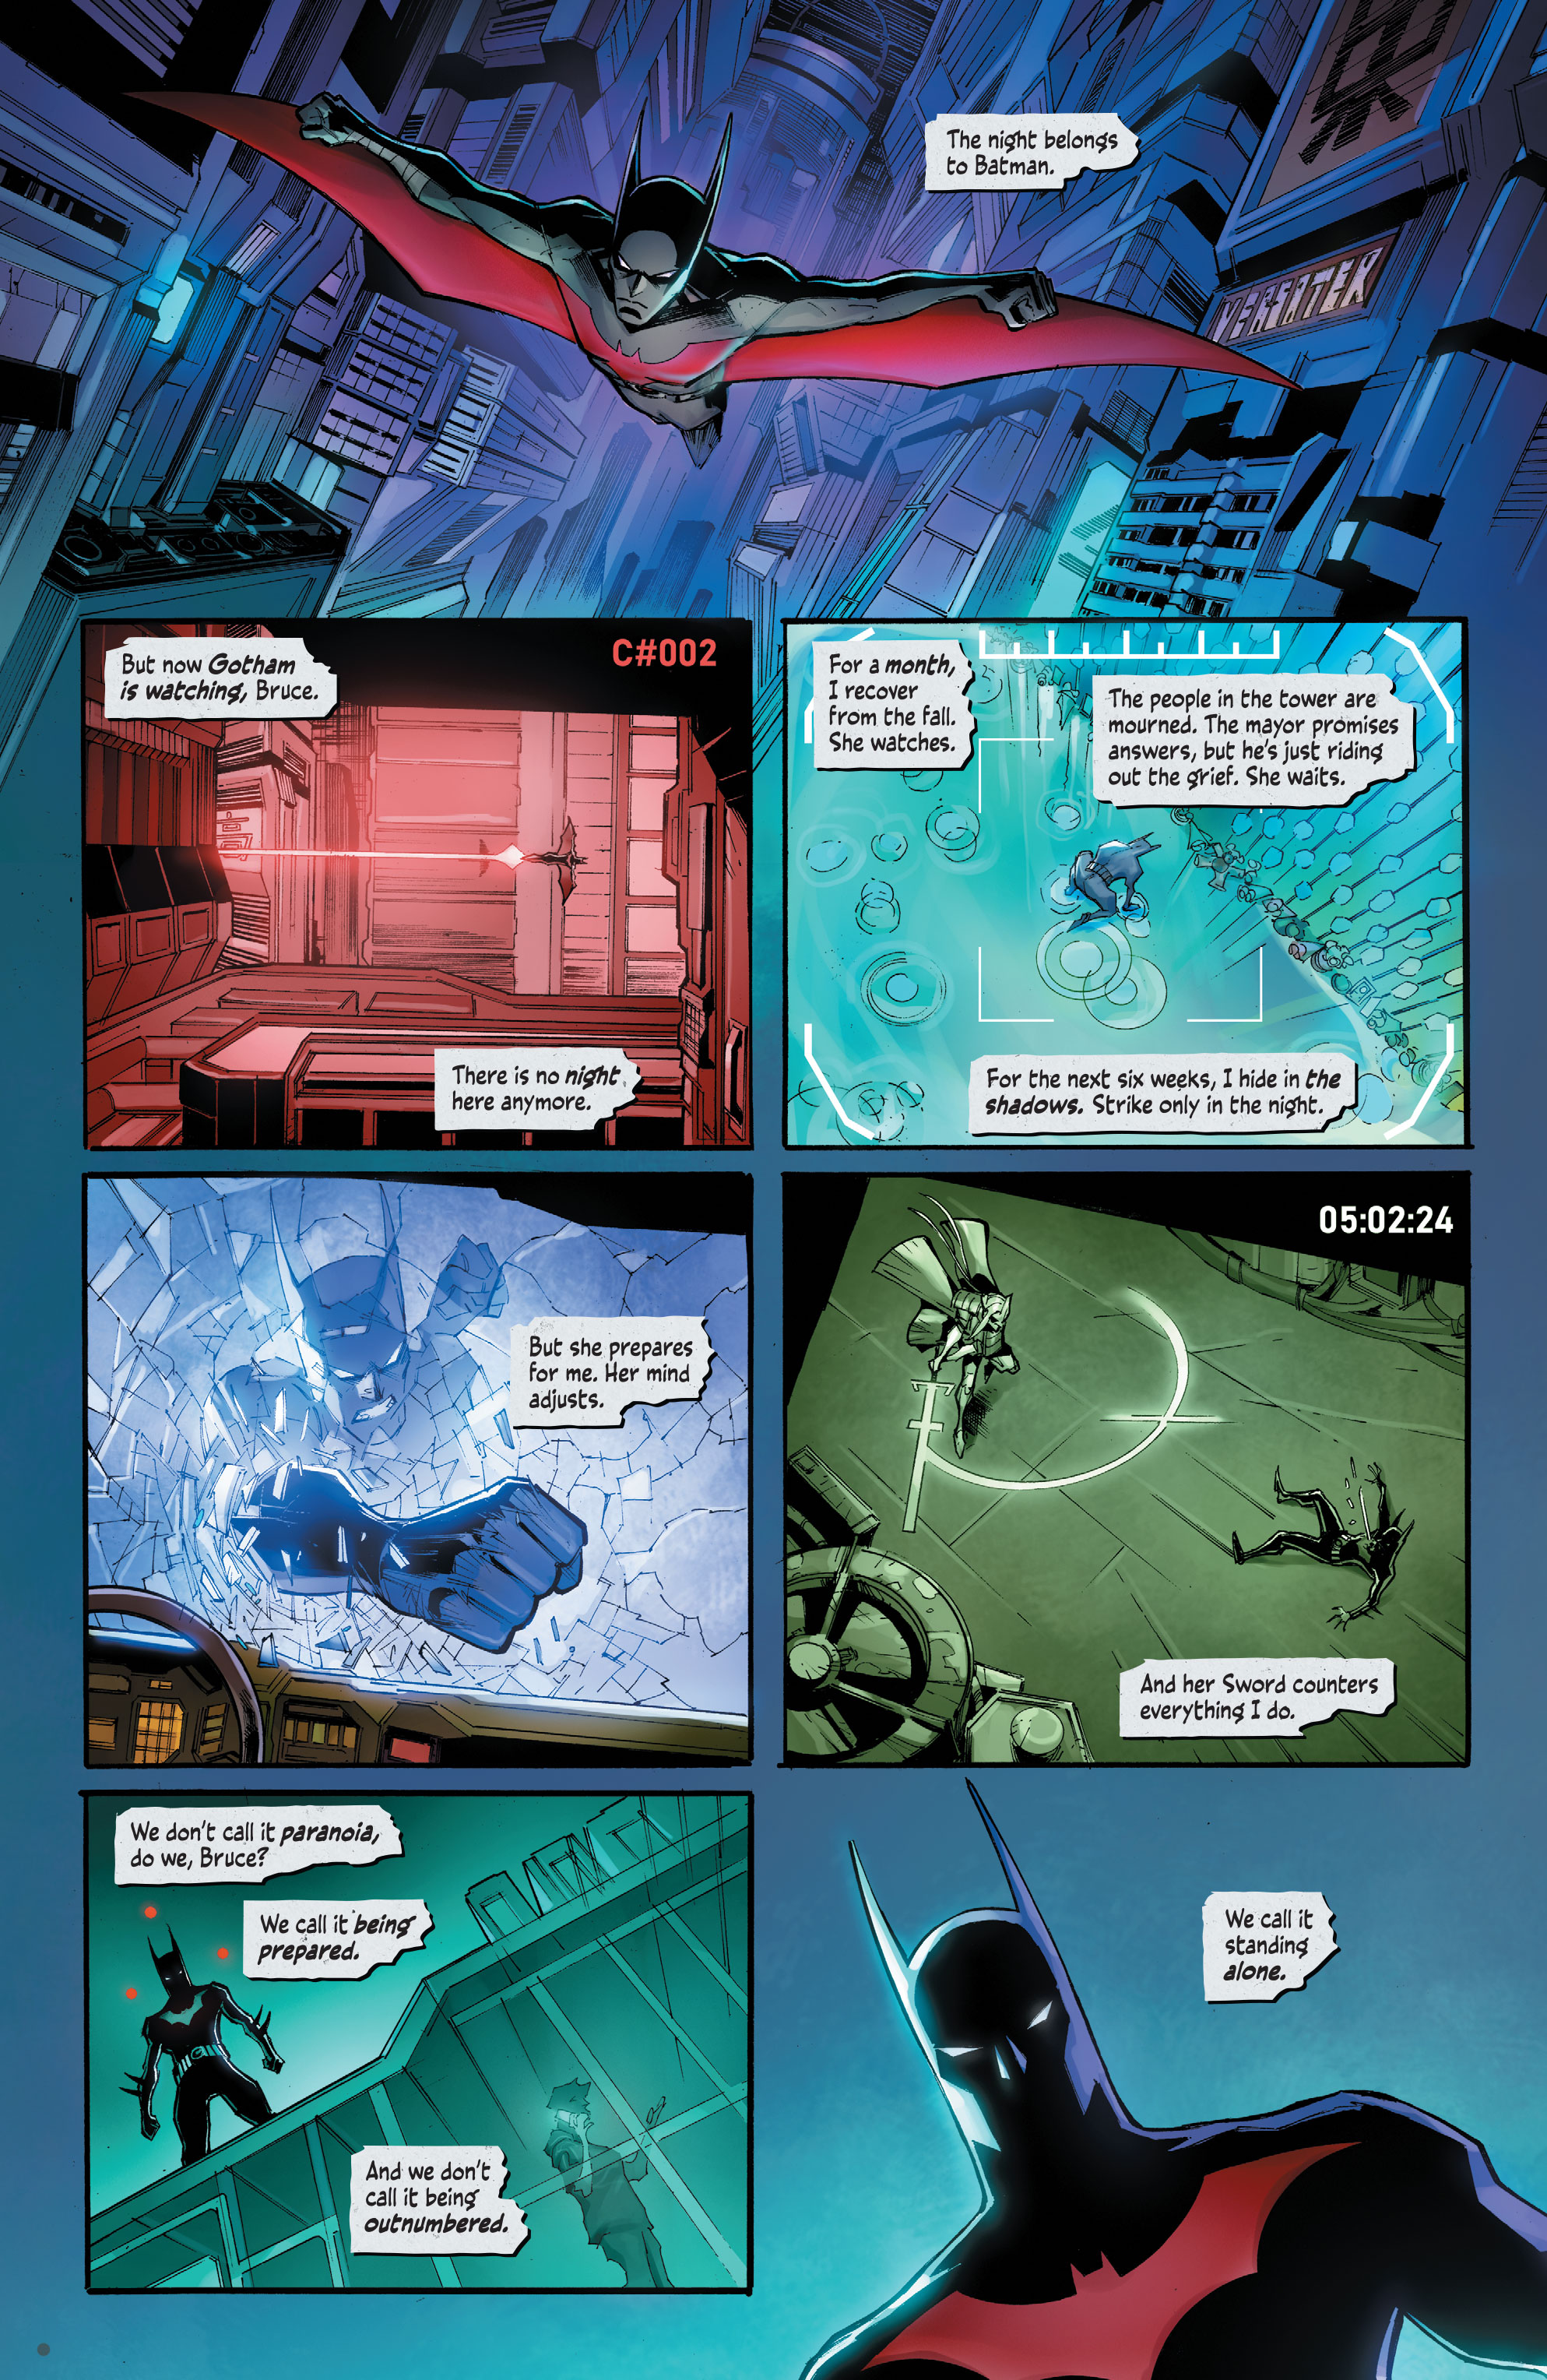 Weird Science DC Comics: Batman Beyond: Neo-Year #2 Review